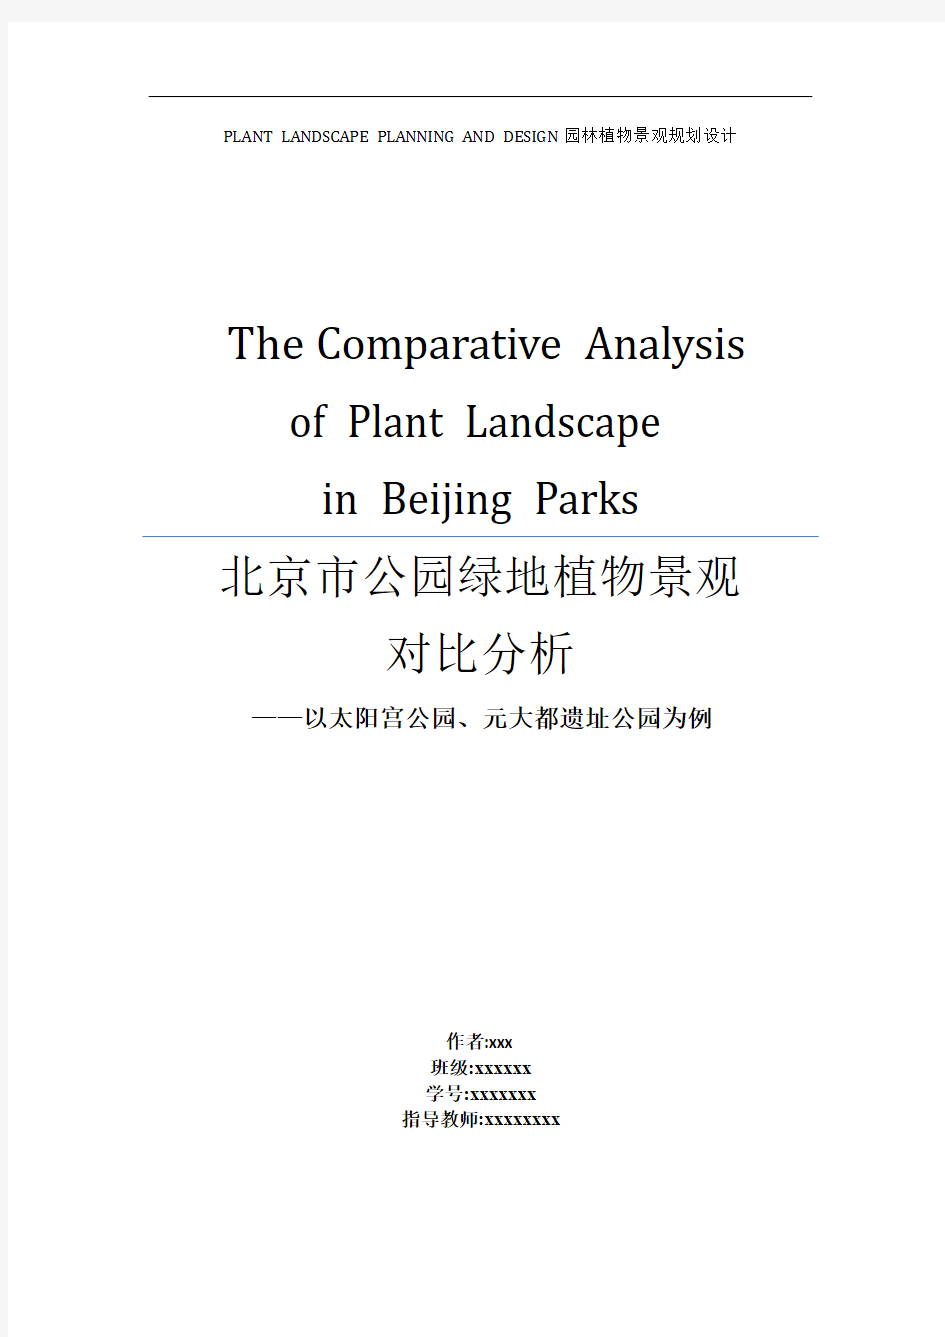 北京市公园绿地植物景观对比分析讲解